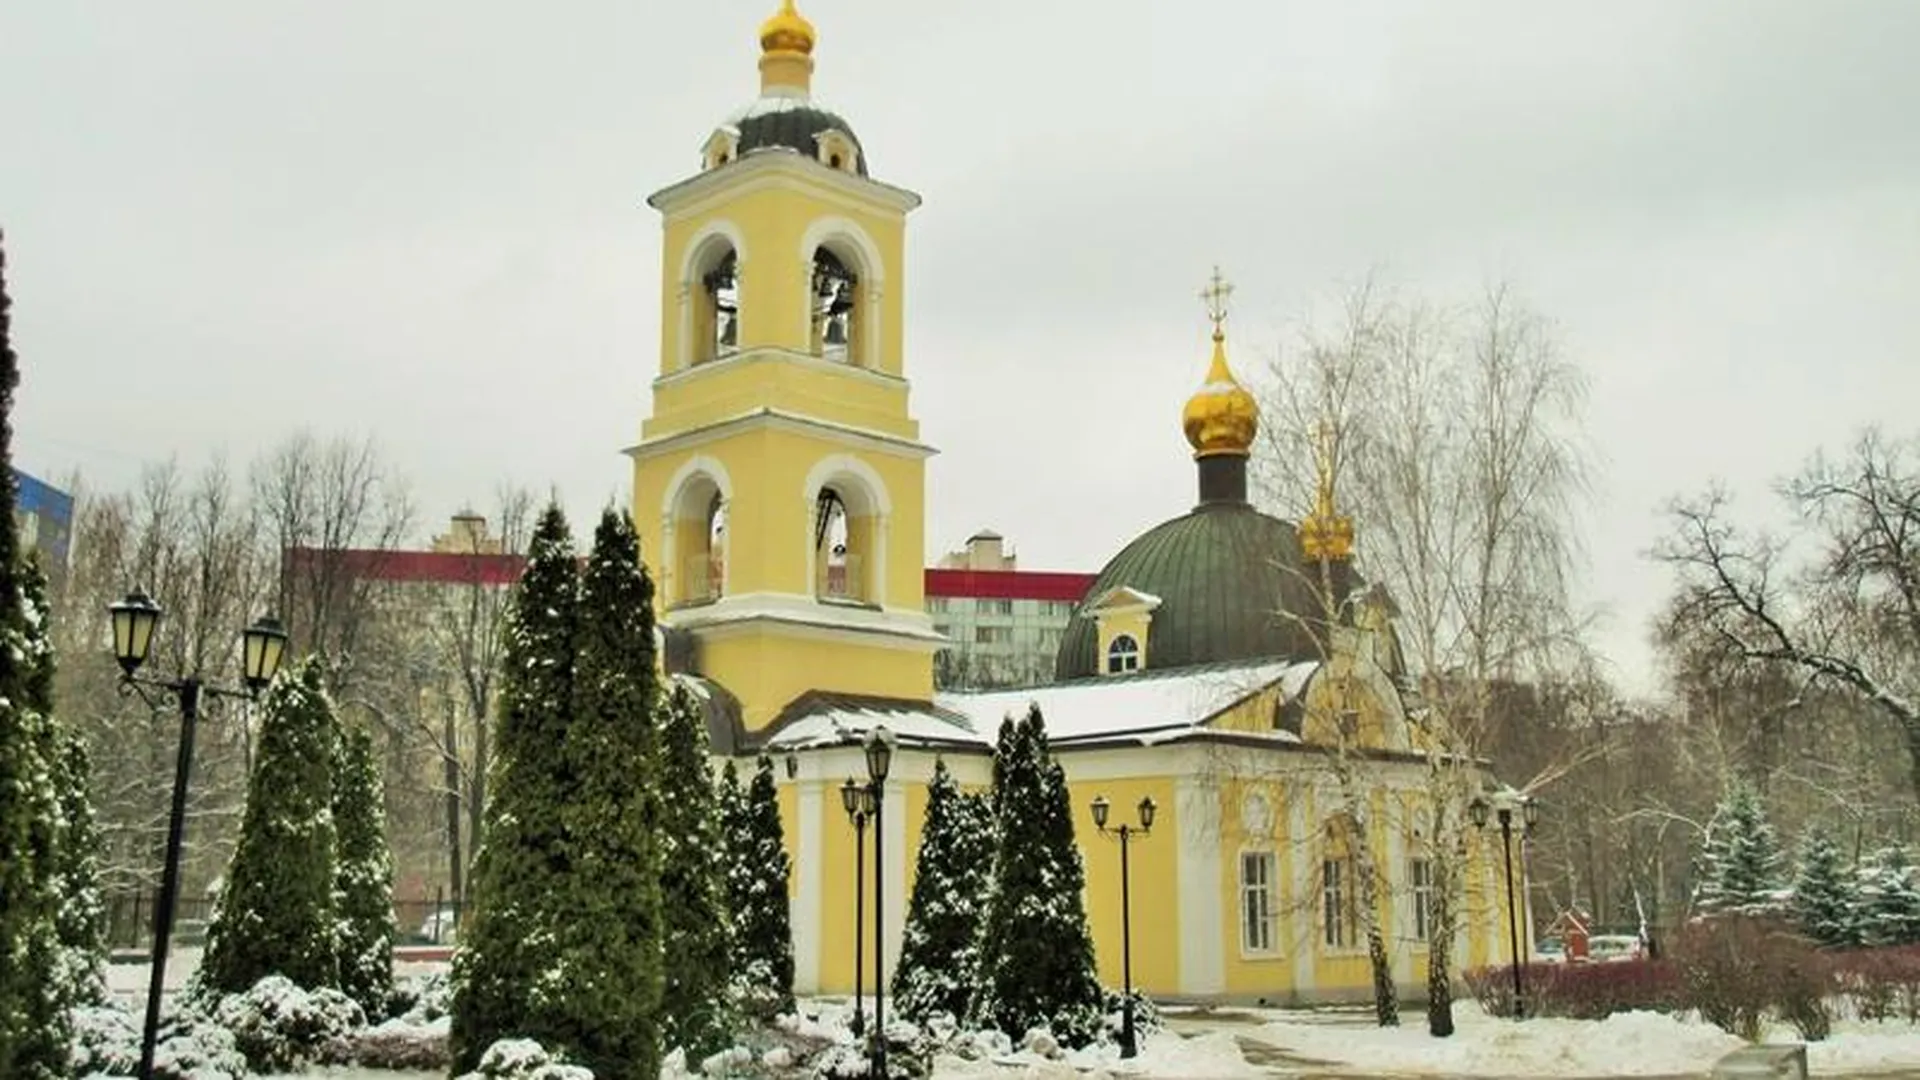 Гребневская церковь в Одинцово